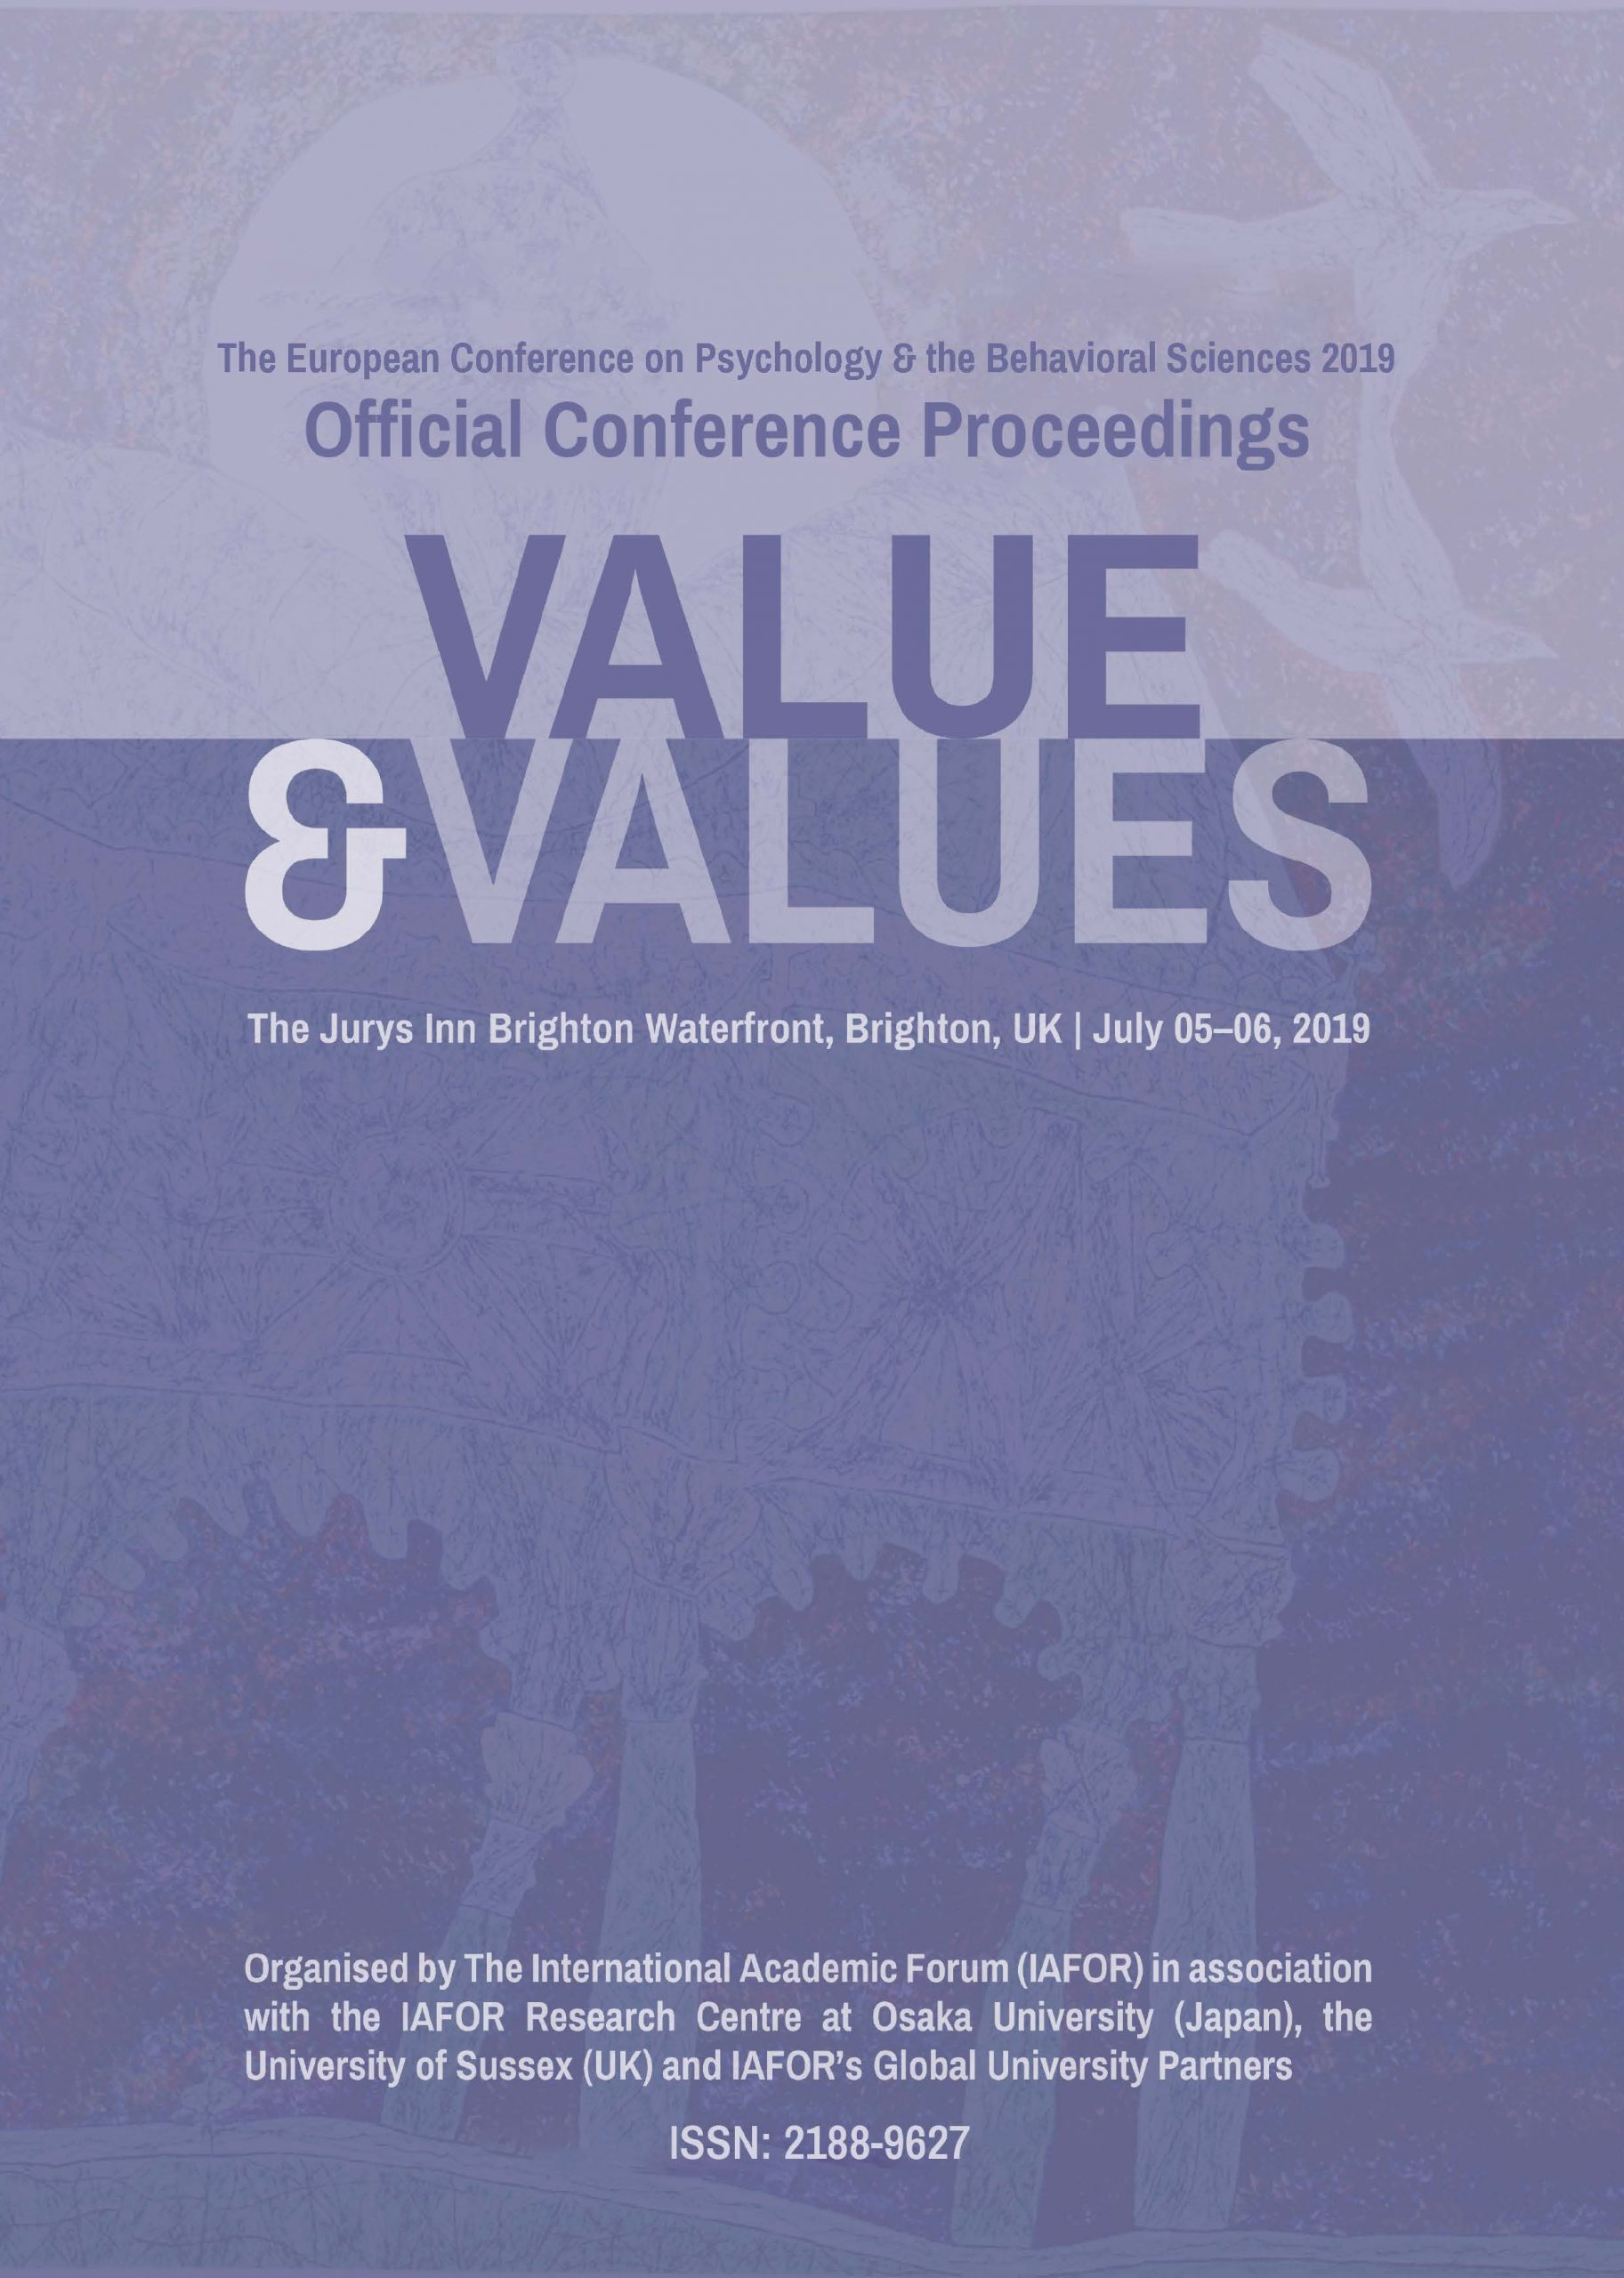 Kansikuva. Konferenssi nimi, ajankohta tekä teema, Value & FValues, violetilla pohjalla.